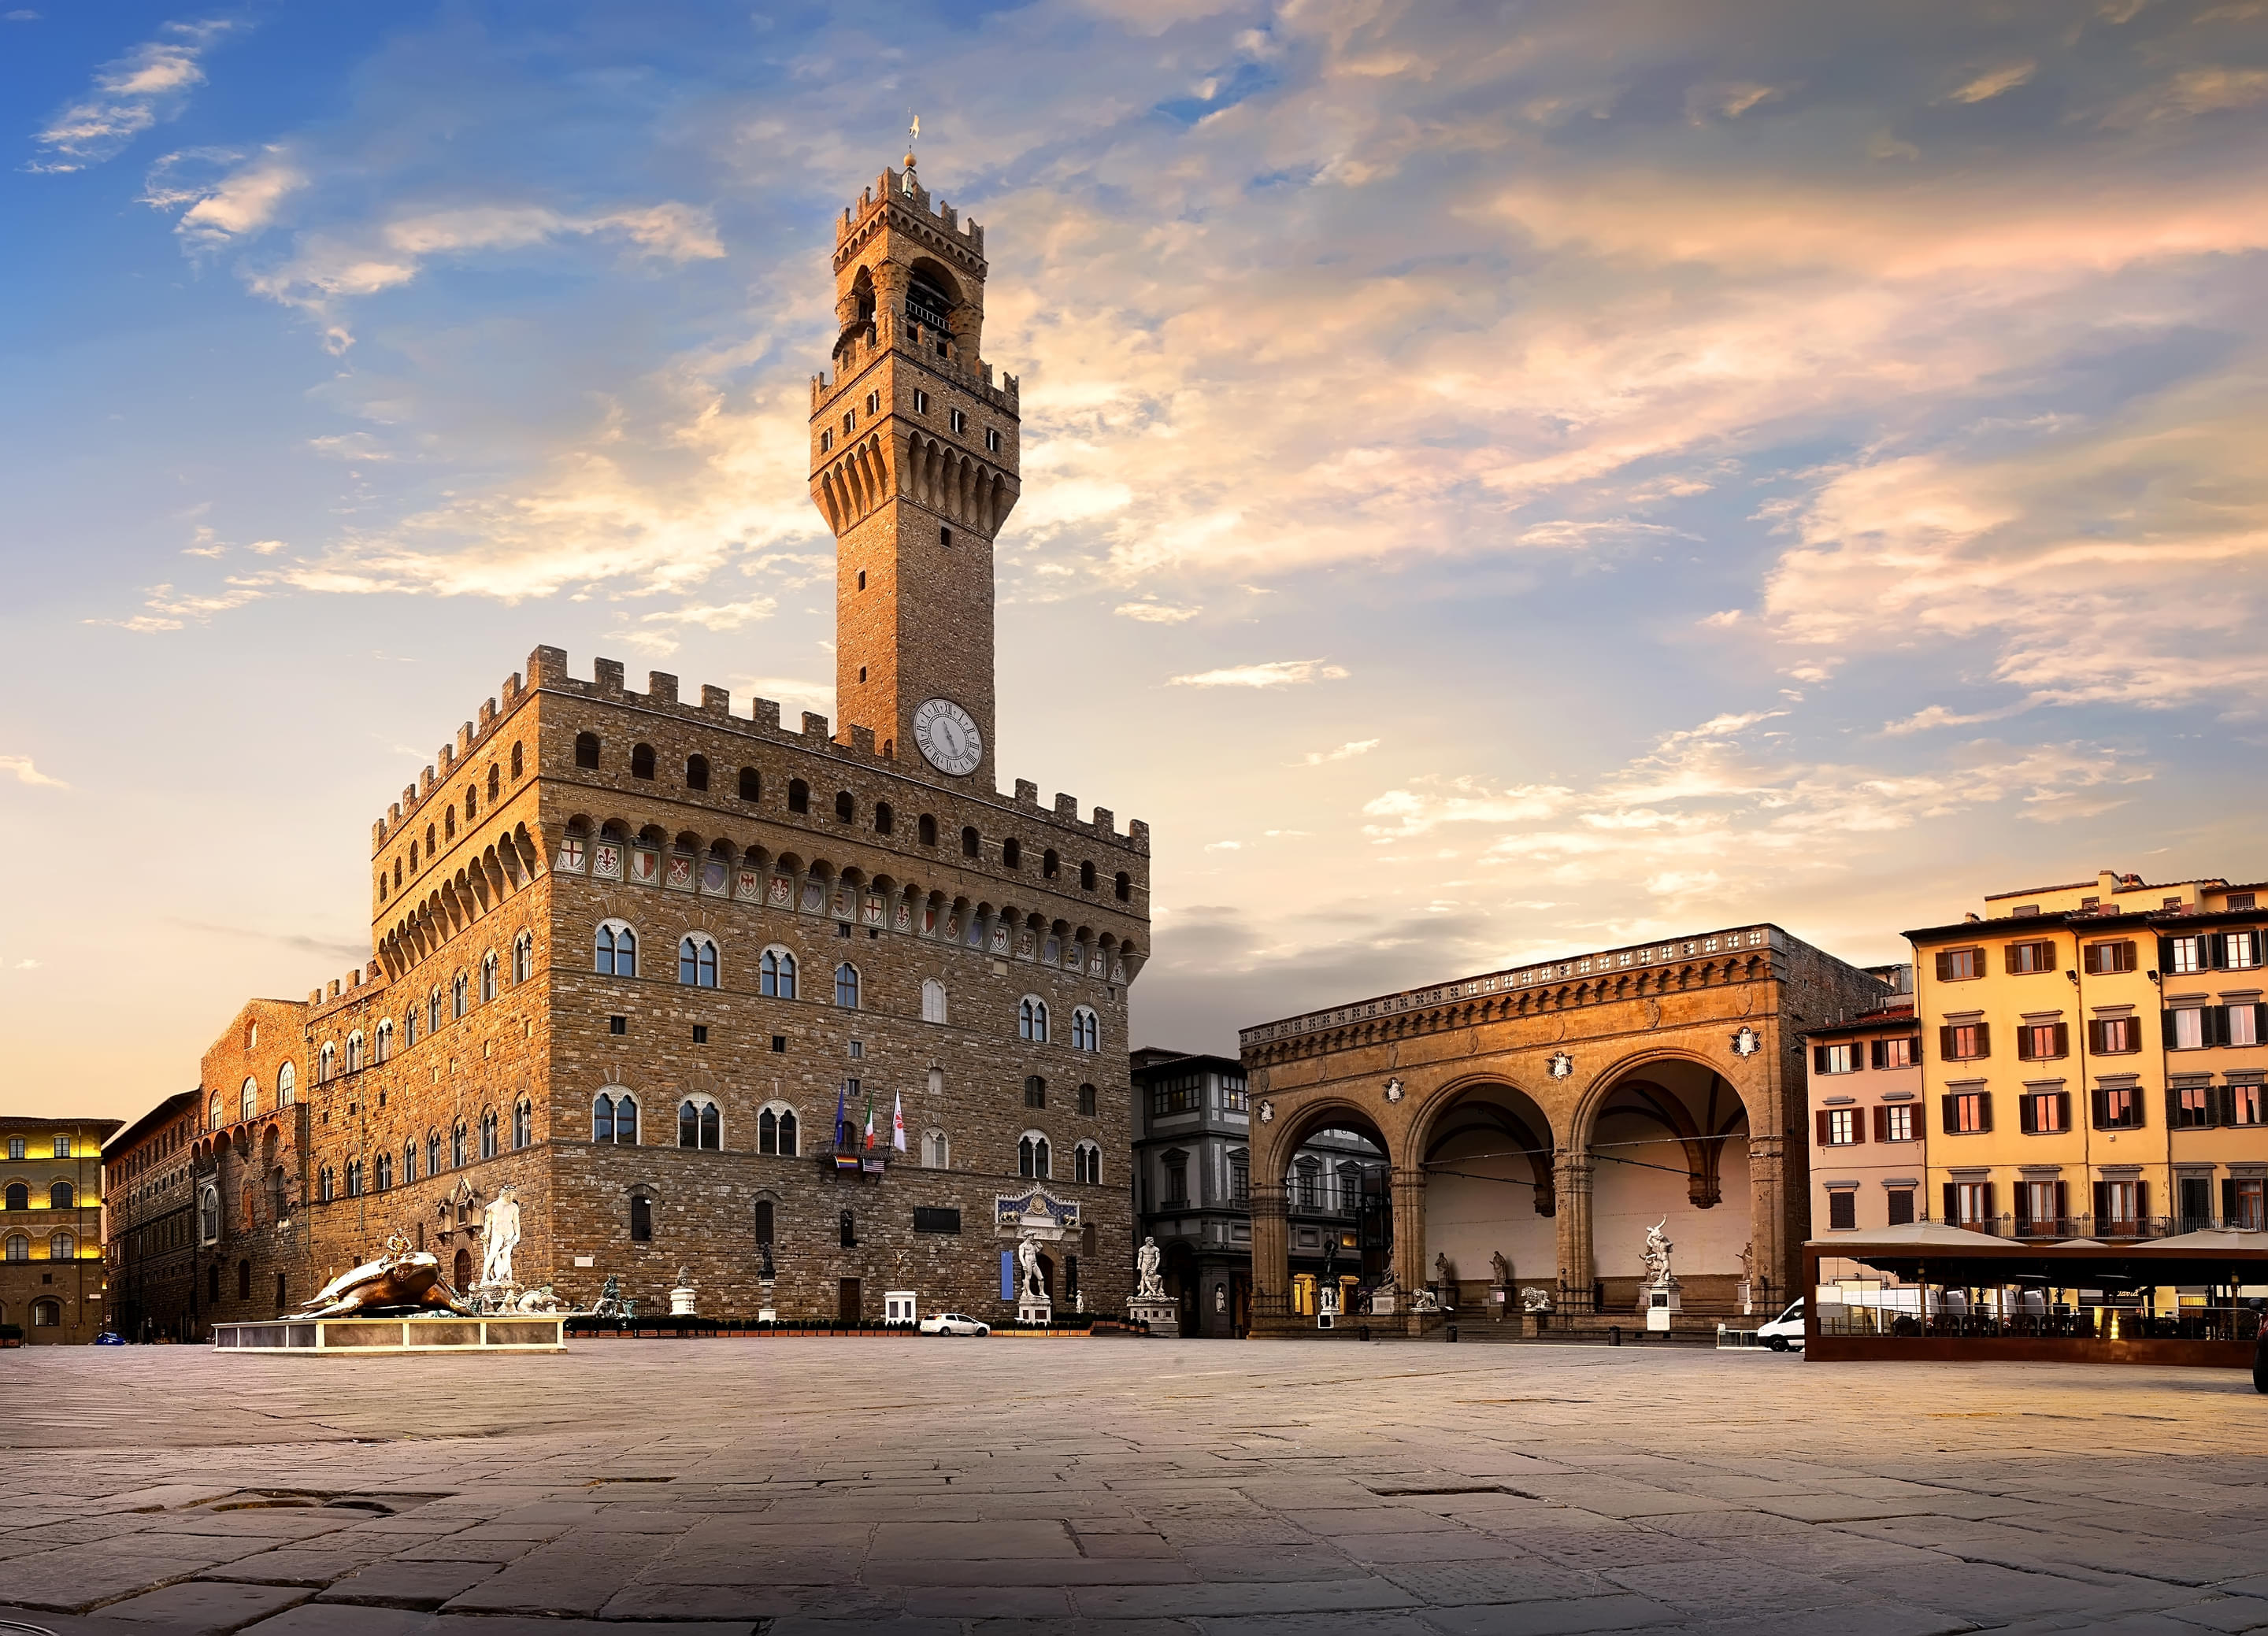 Palazzo Vecchio Overview